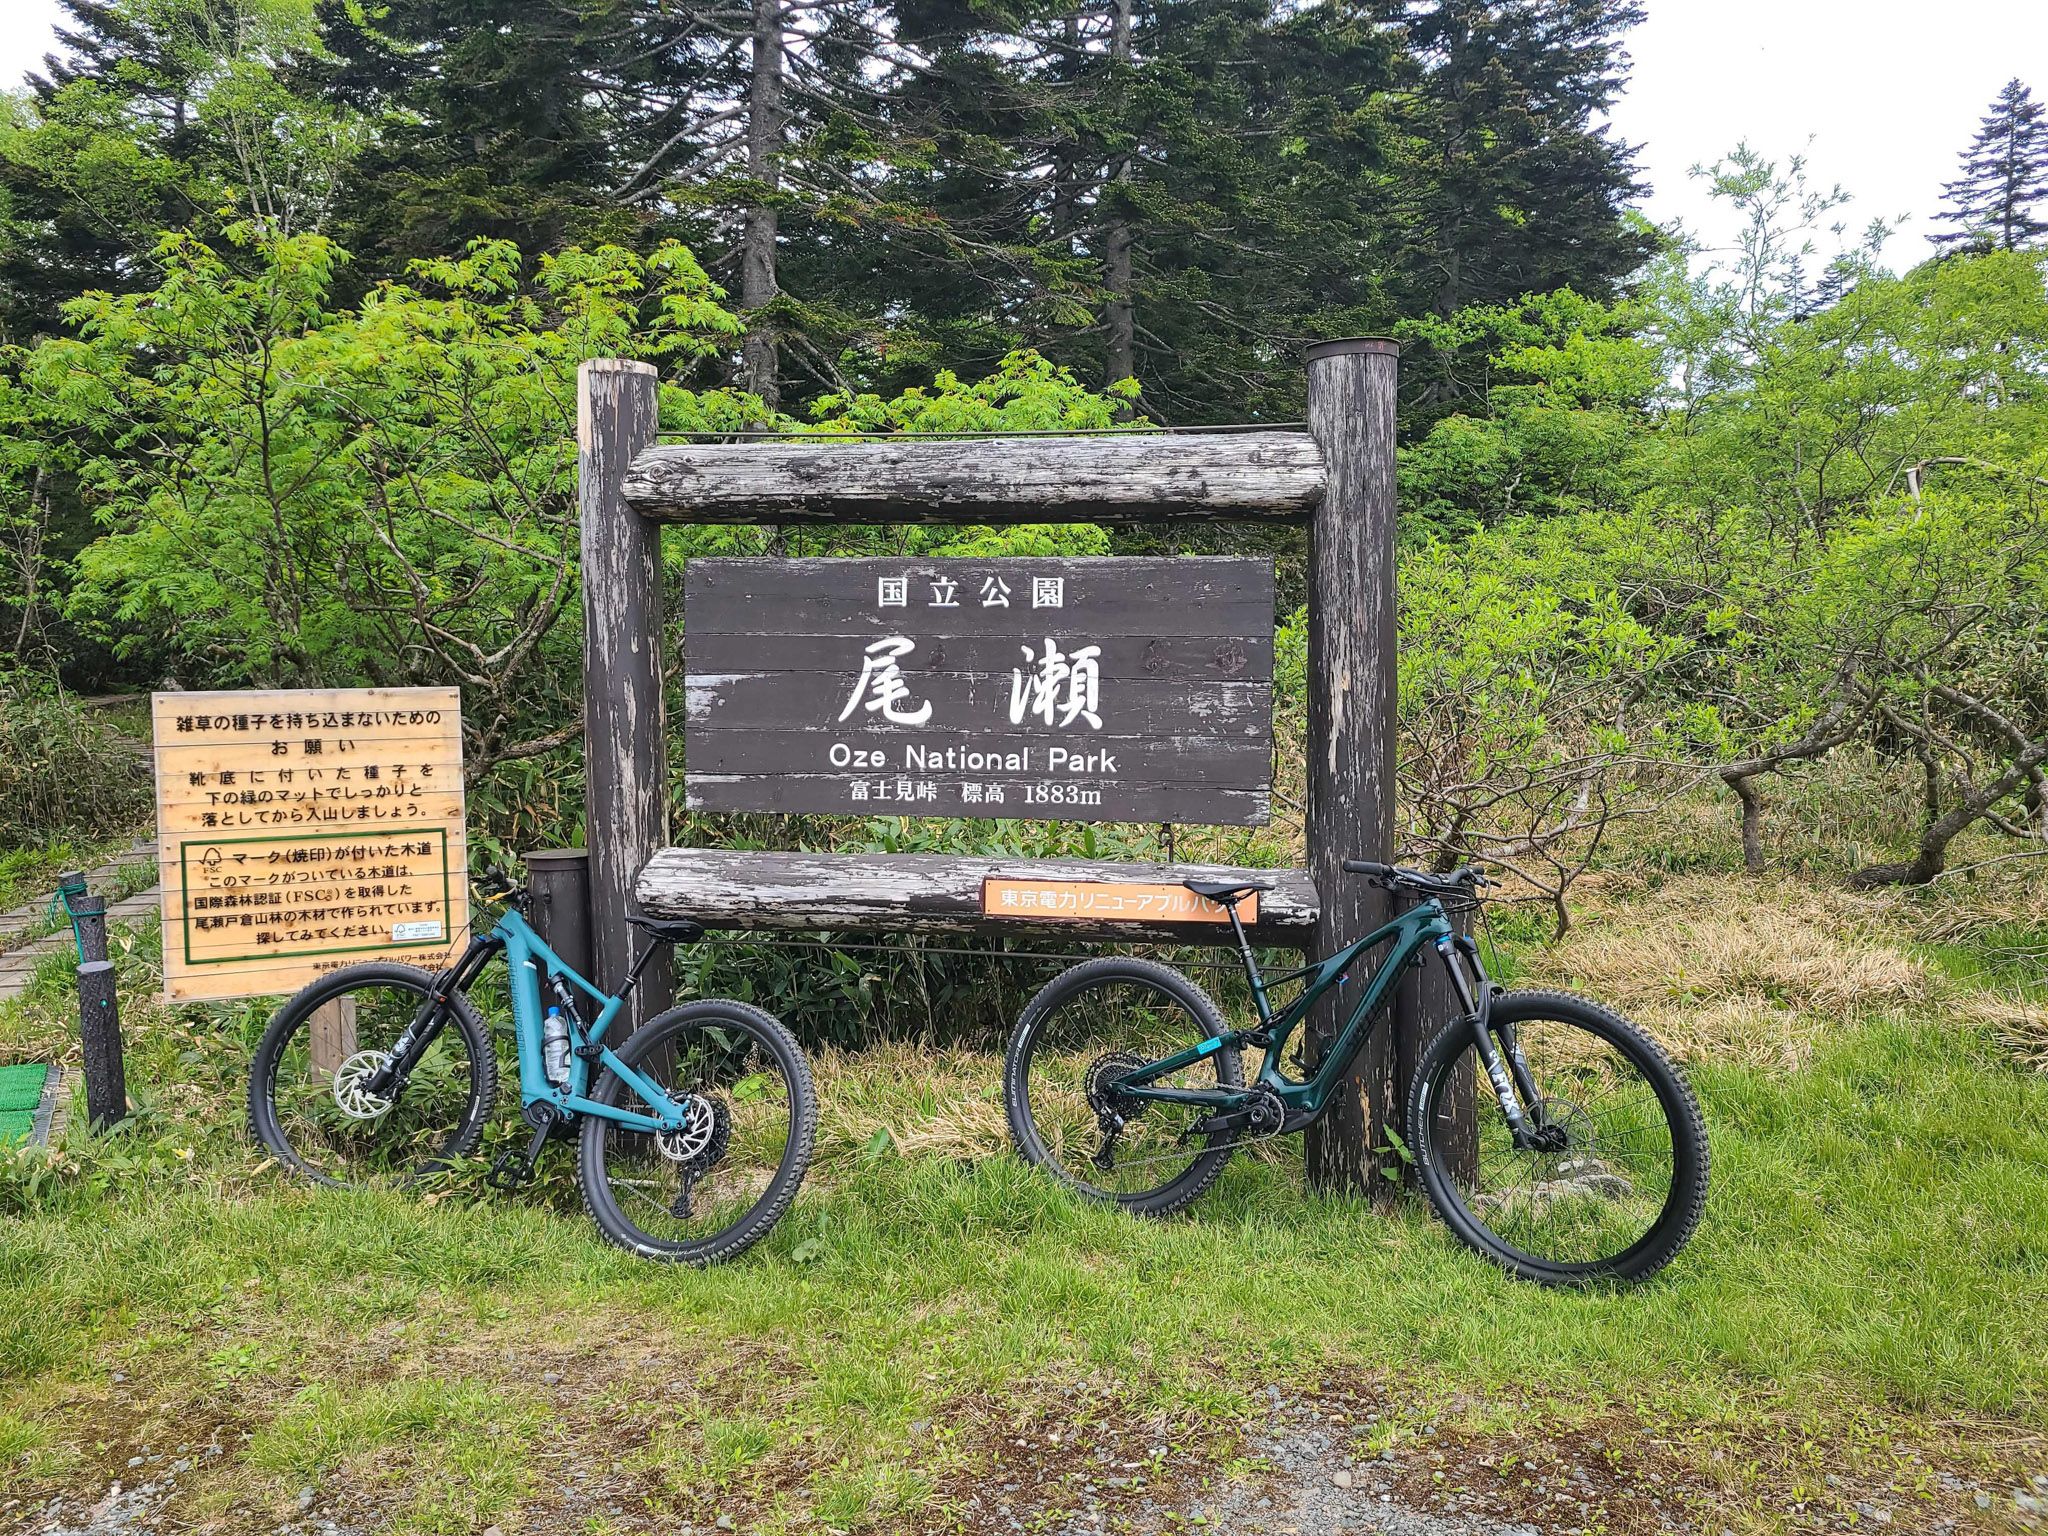 今年から始まった尾瀬”Ride n’Hike” e-bikeツアーに参加してきました。